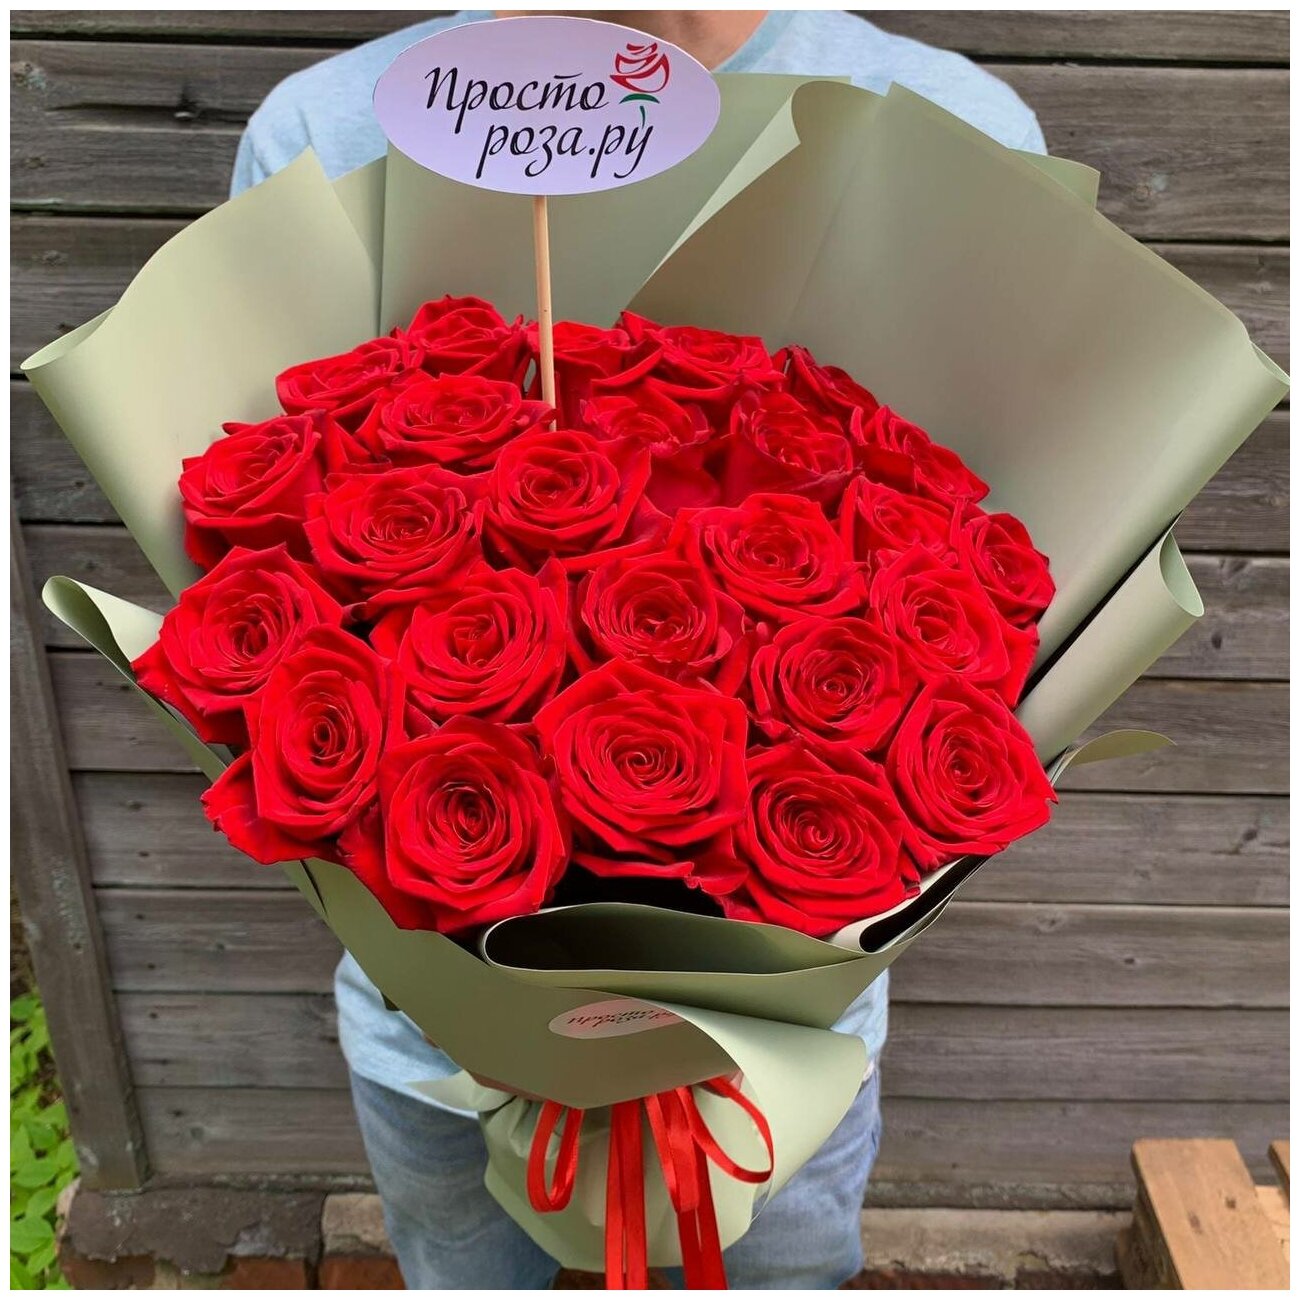 Розы 25 шт красные 50 см в зеленой упаковке - Просто роза ру